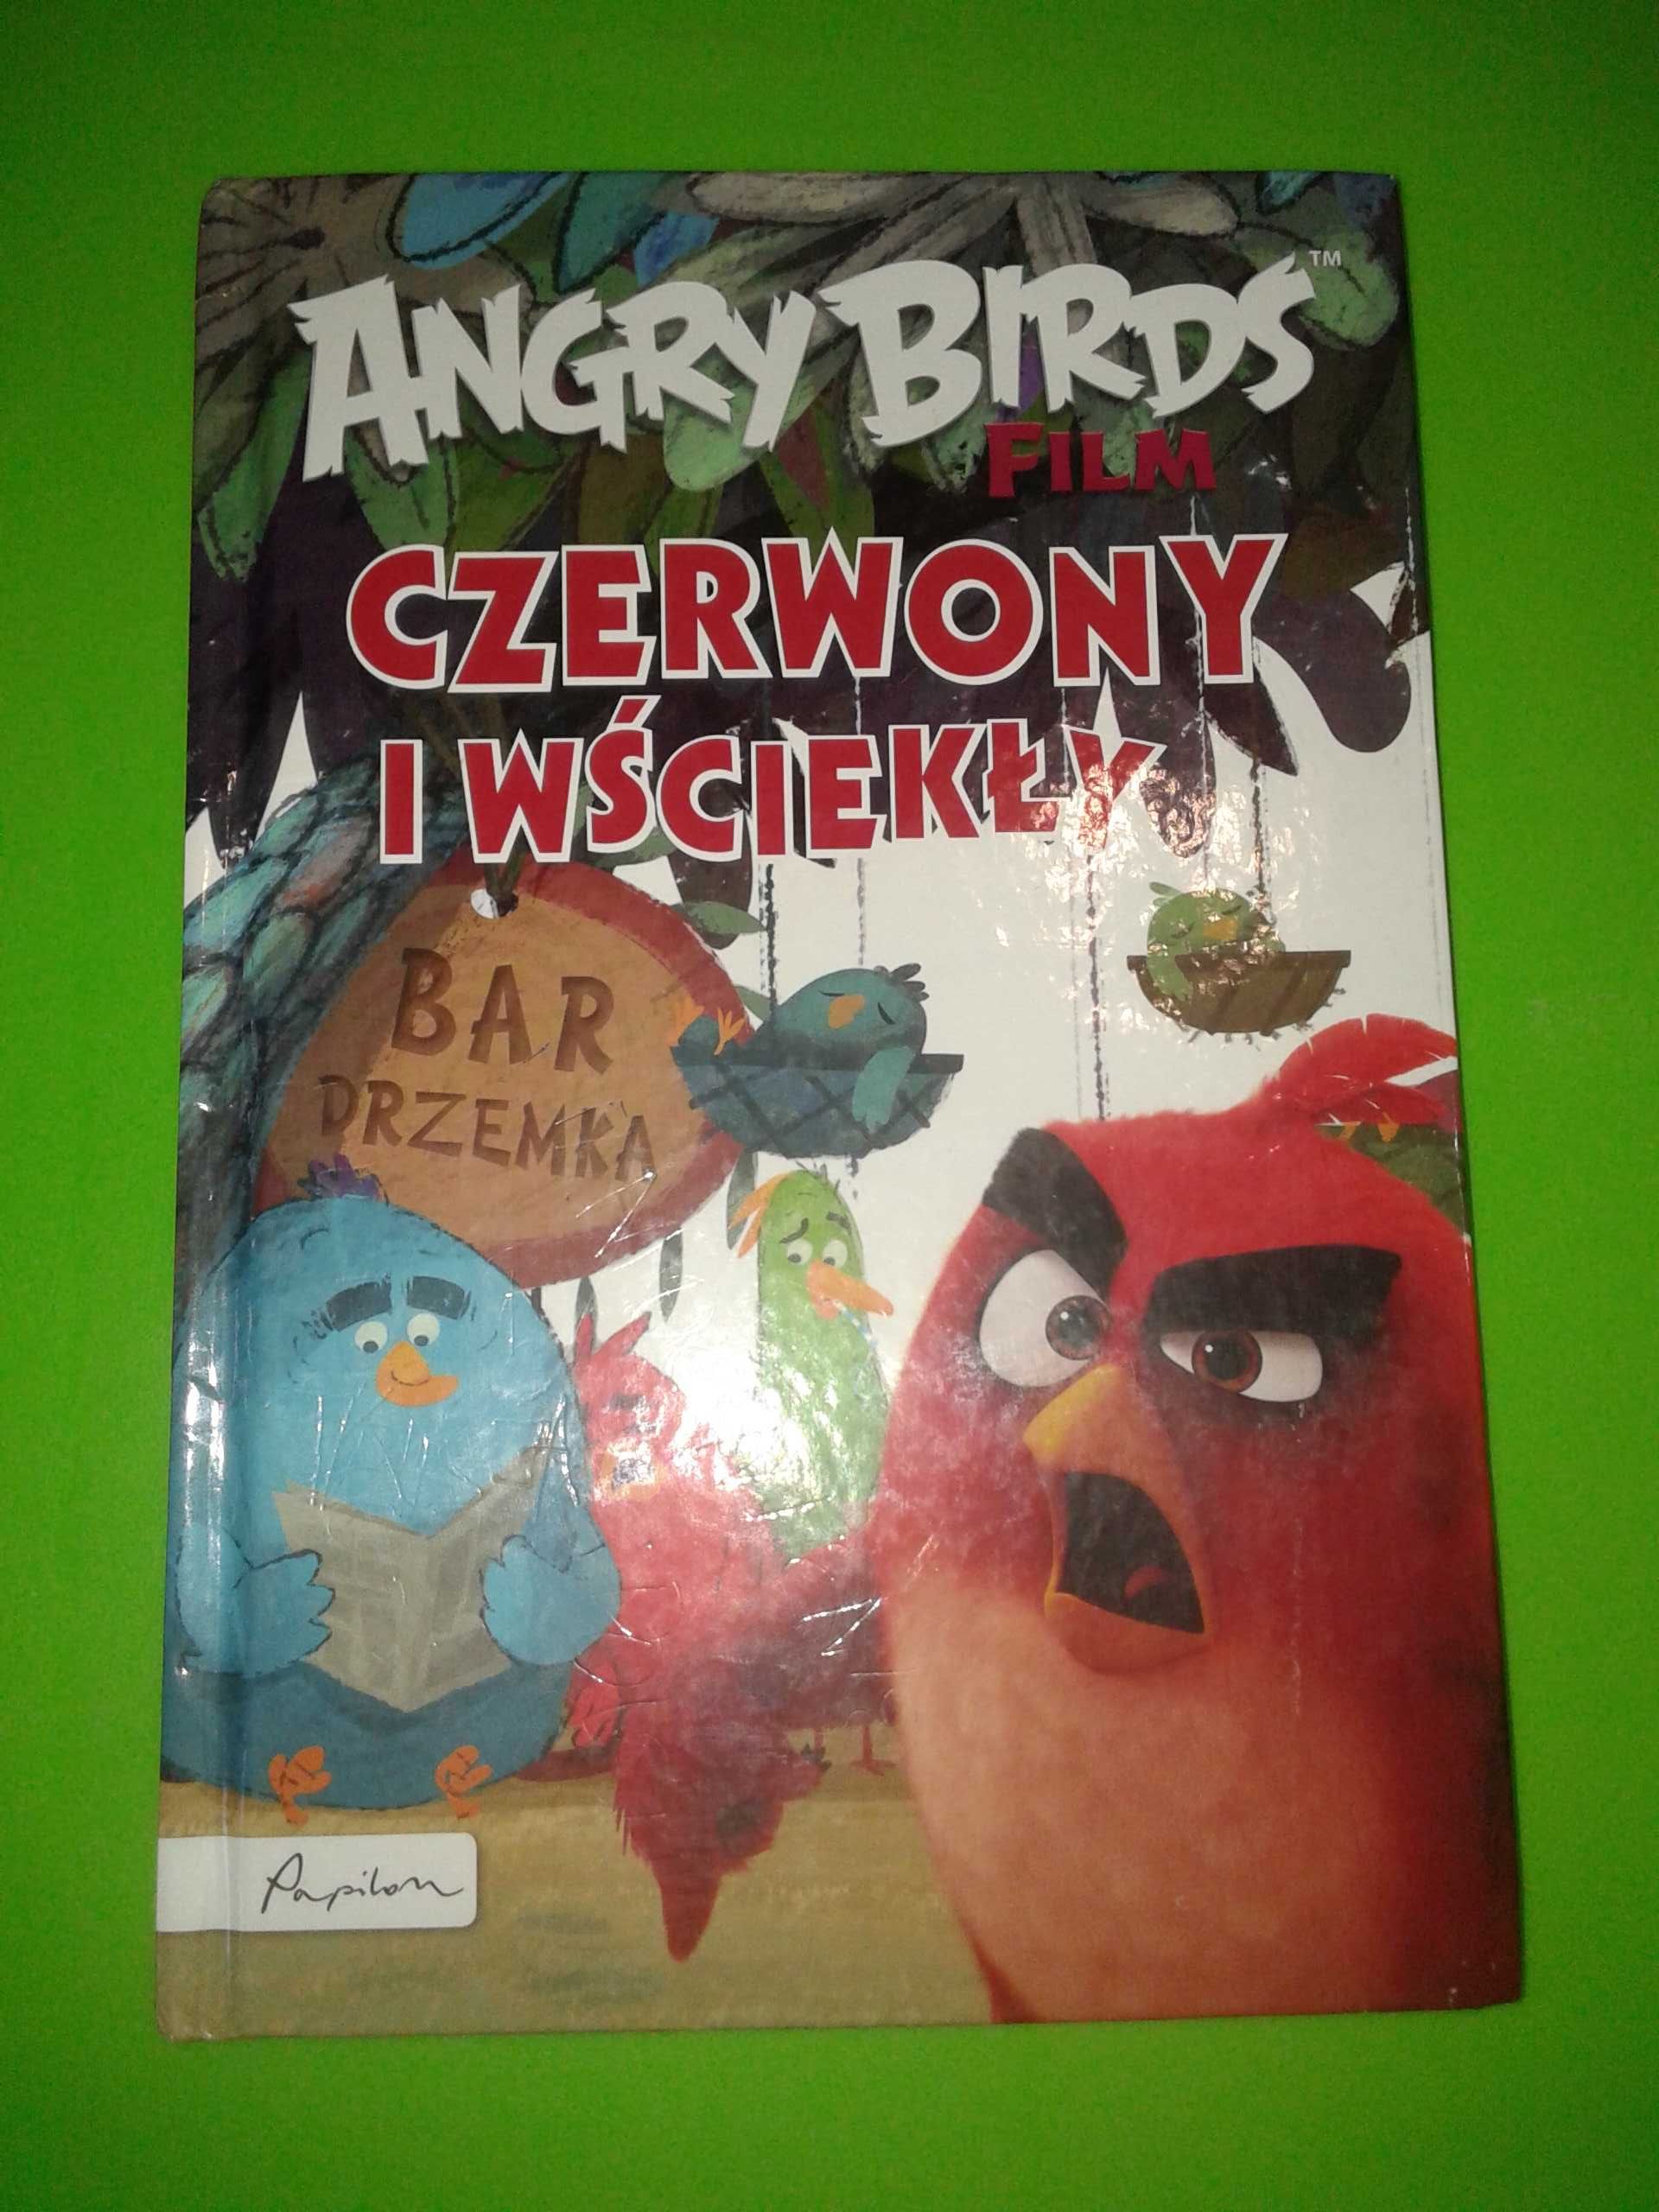 Czerwony i wściekły - Angry Birds - Sarah Stephens